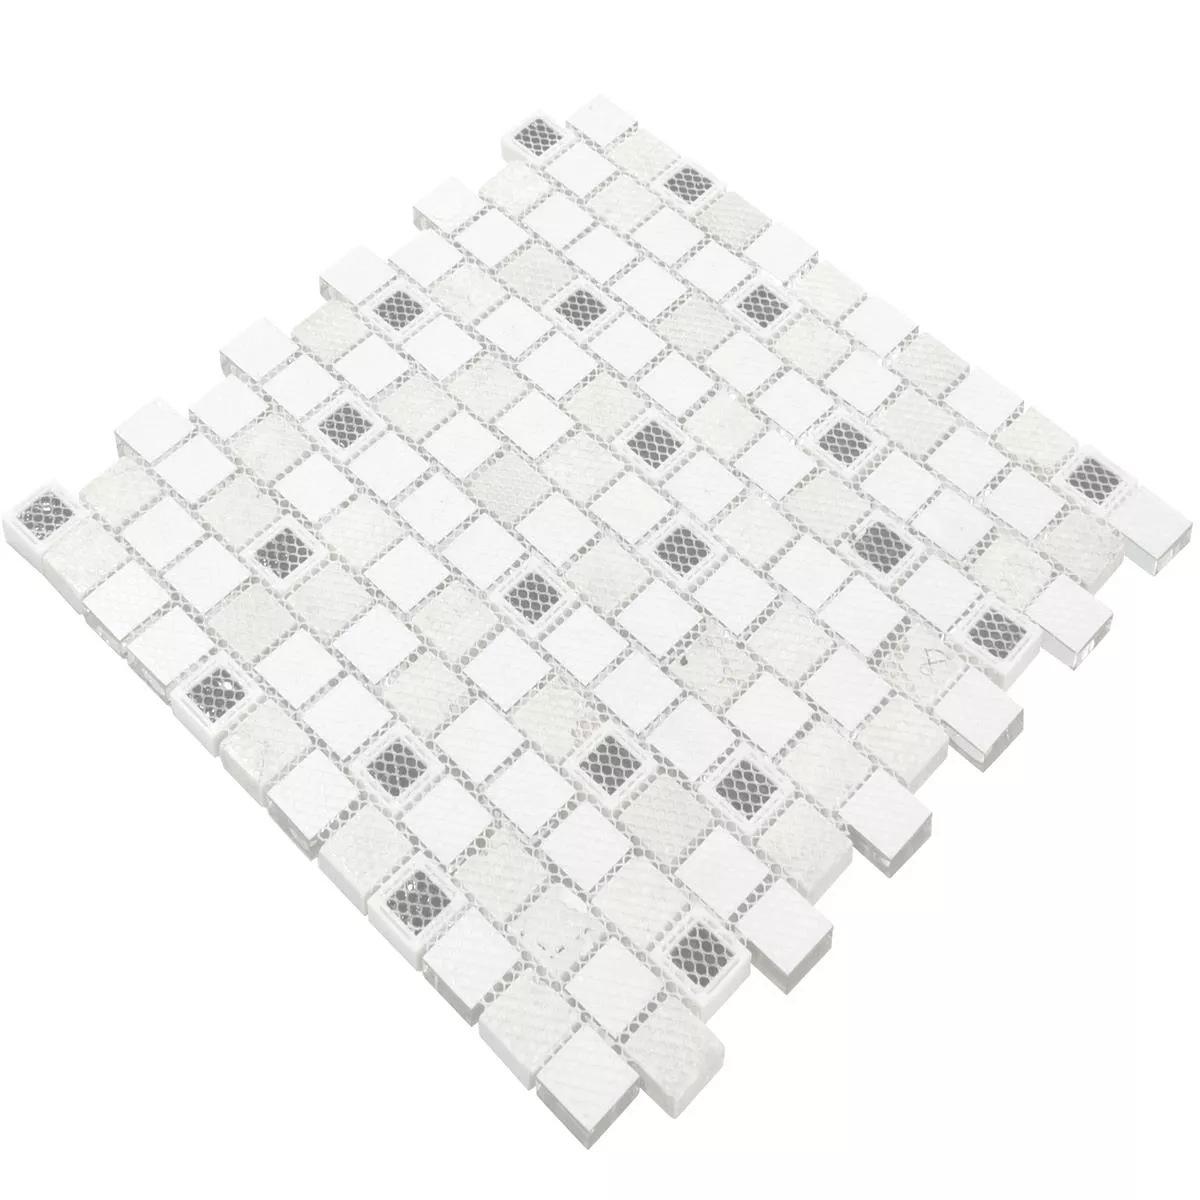 Glas Kunststoff Naturstein Mosaik Lunaquell Weiß